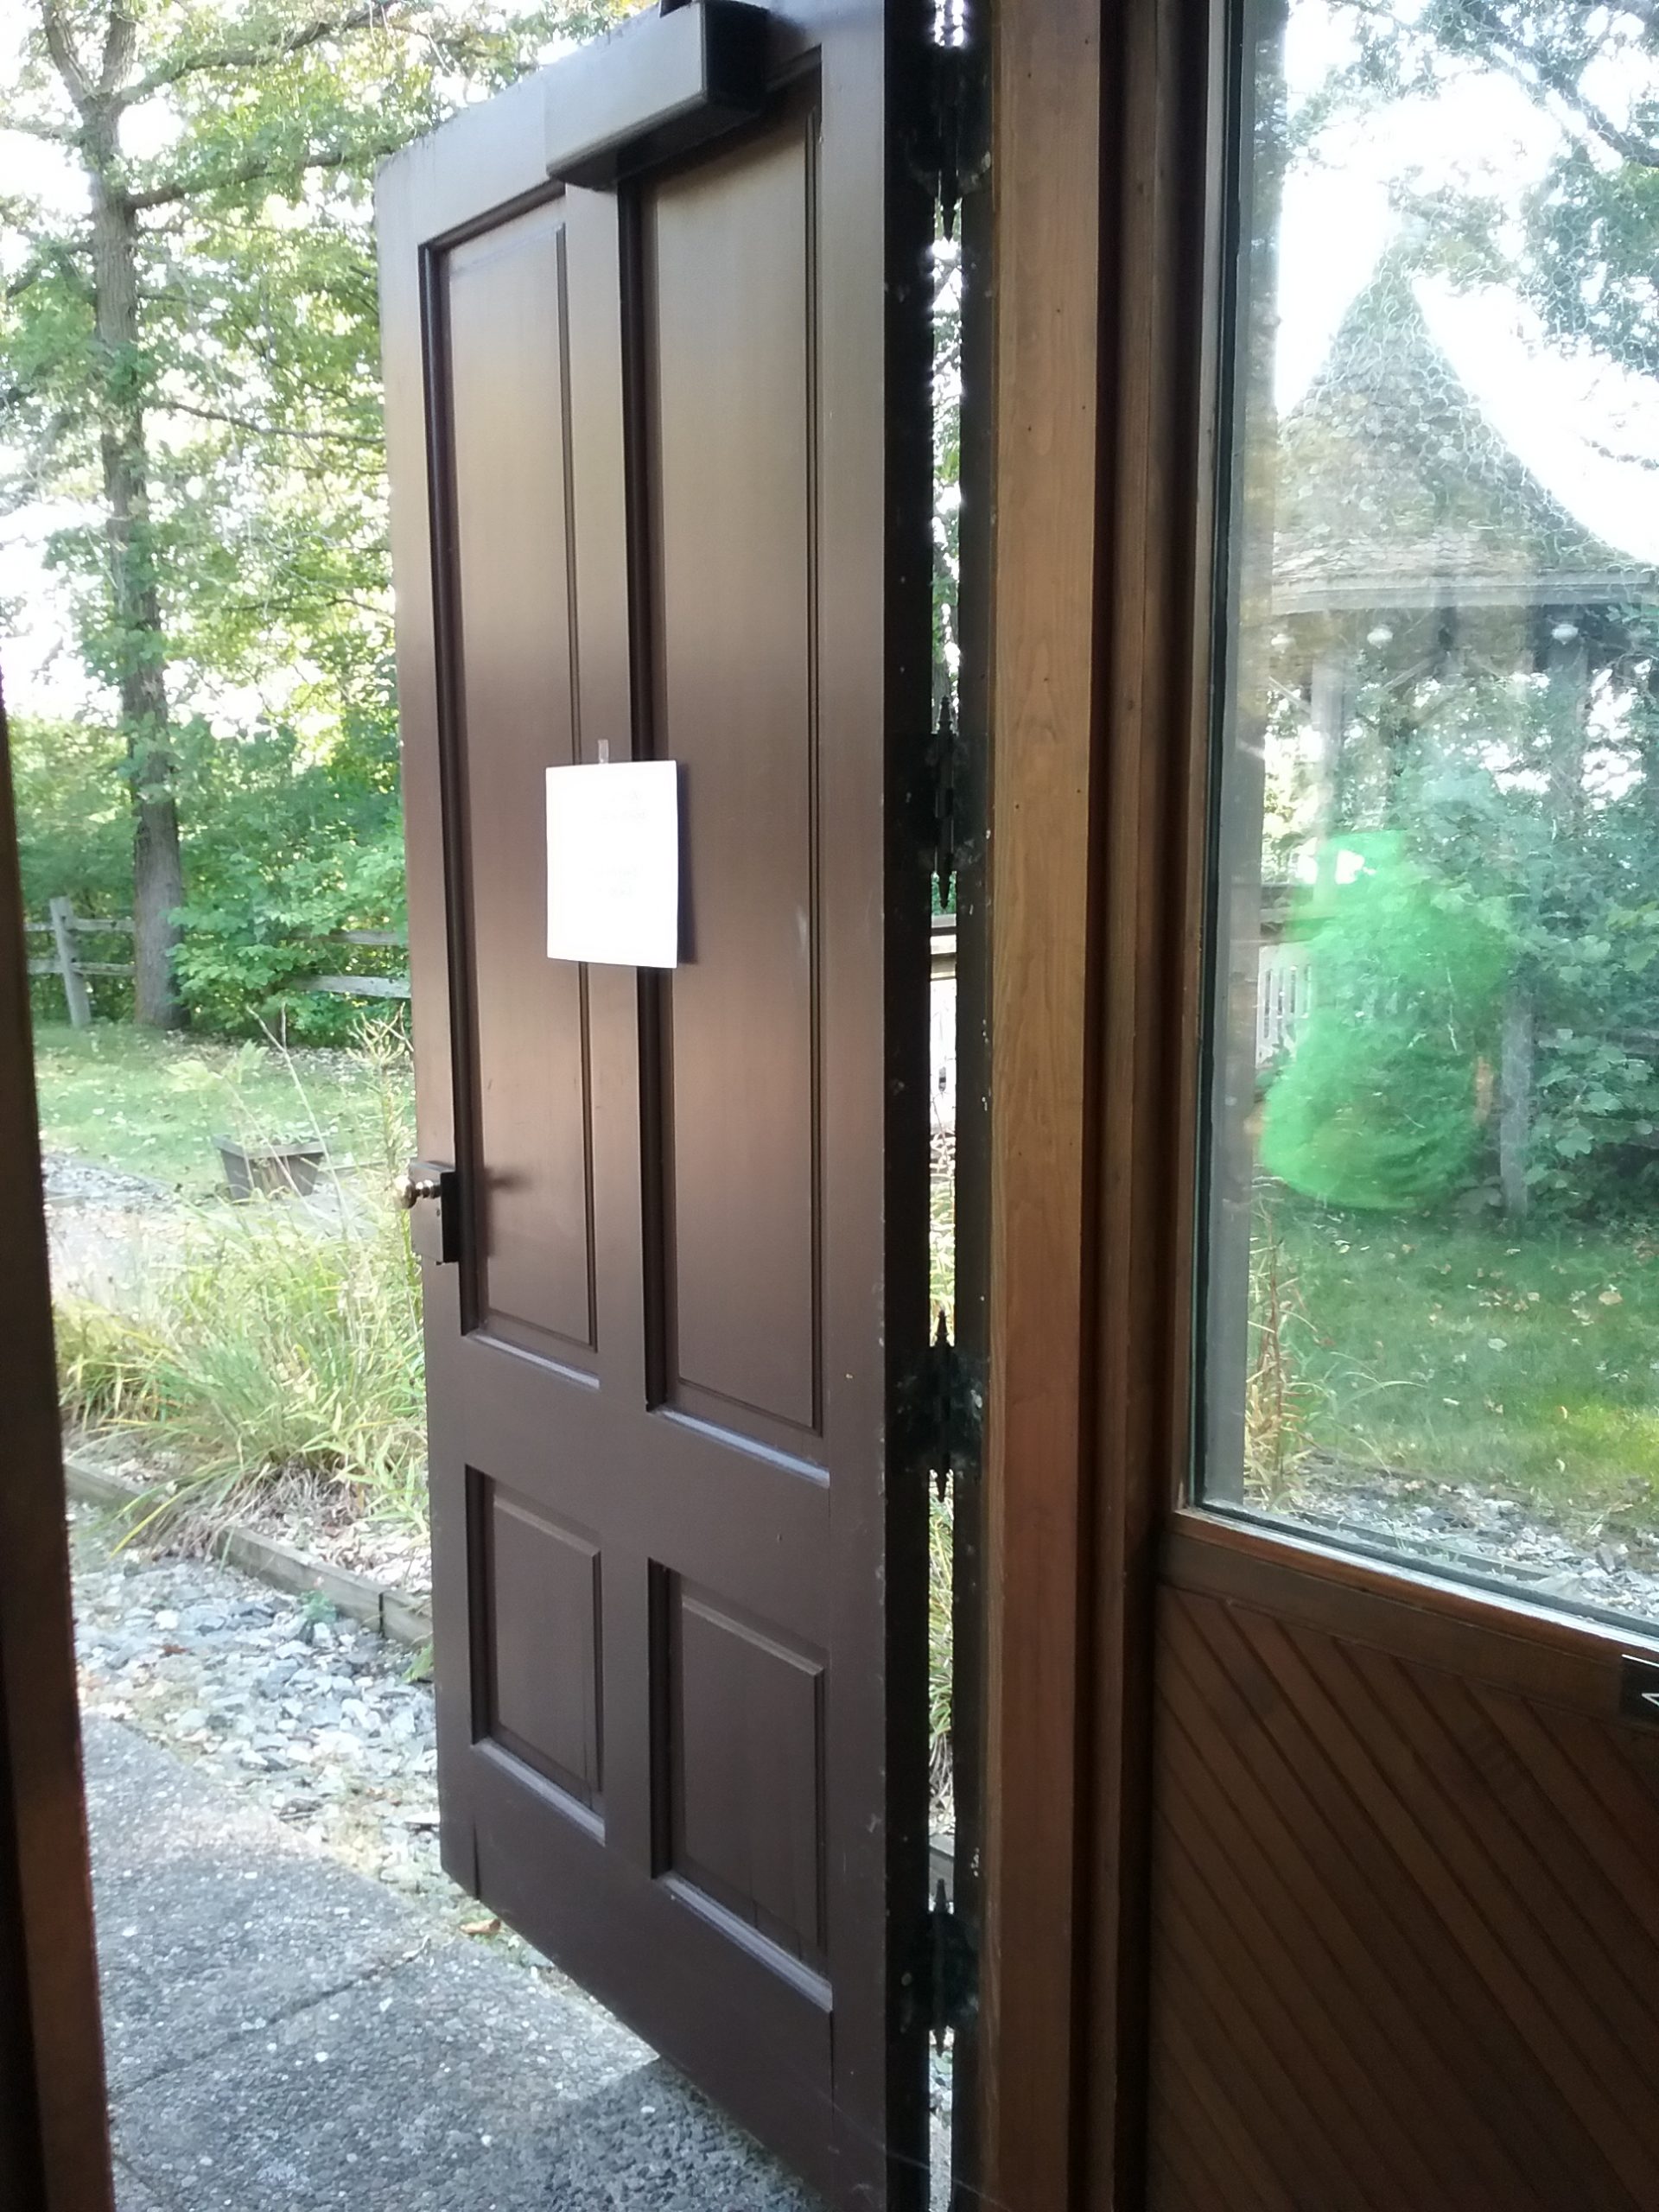 West courtyard door at the Weyerhaeuser Museum, Little Falls, MN, September 12, 2018.